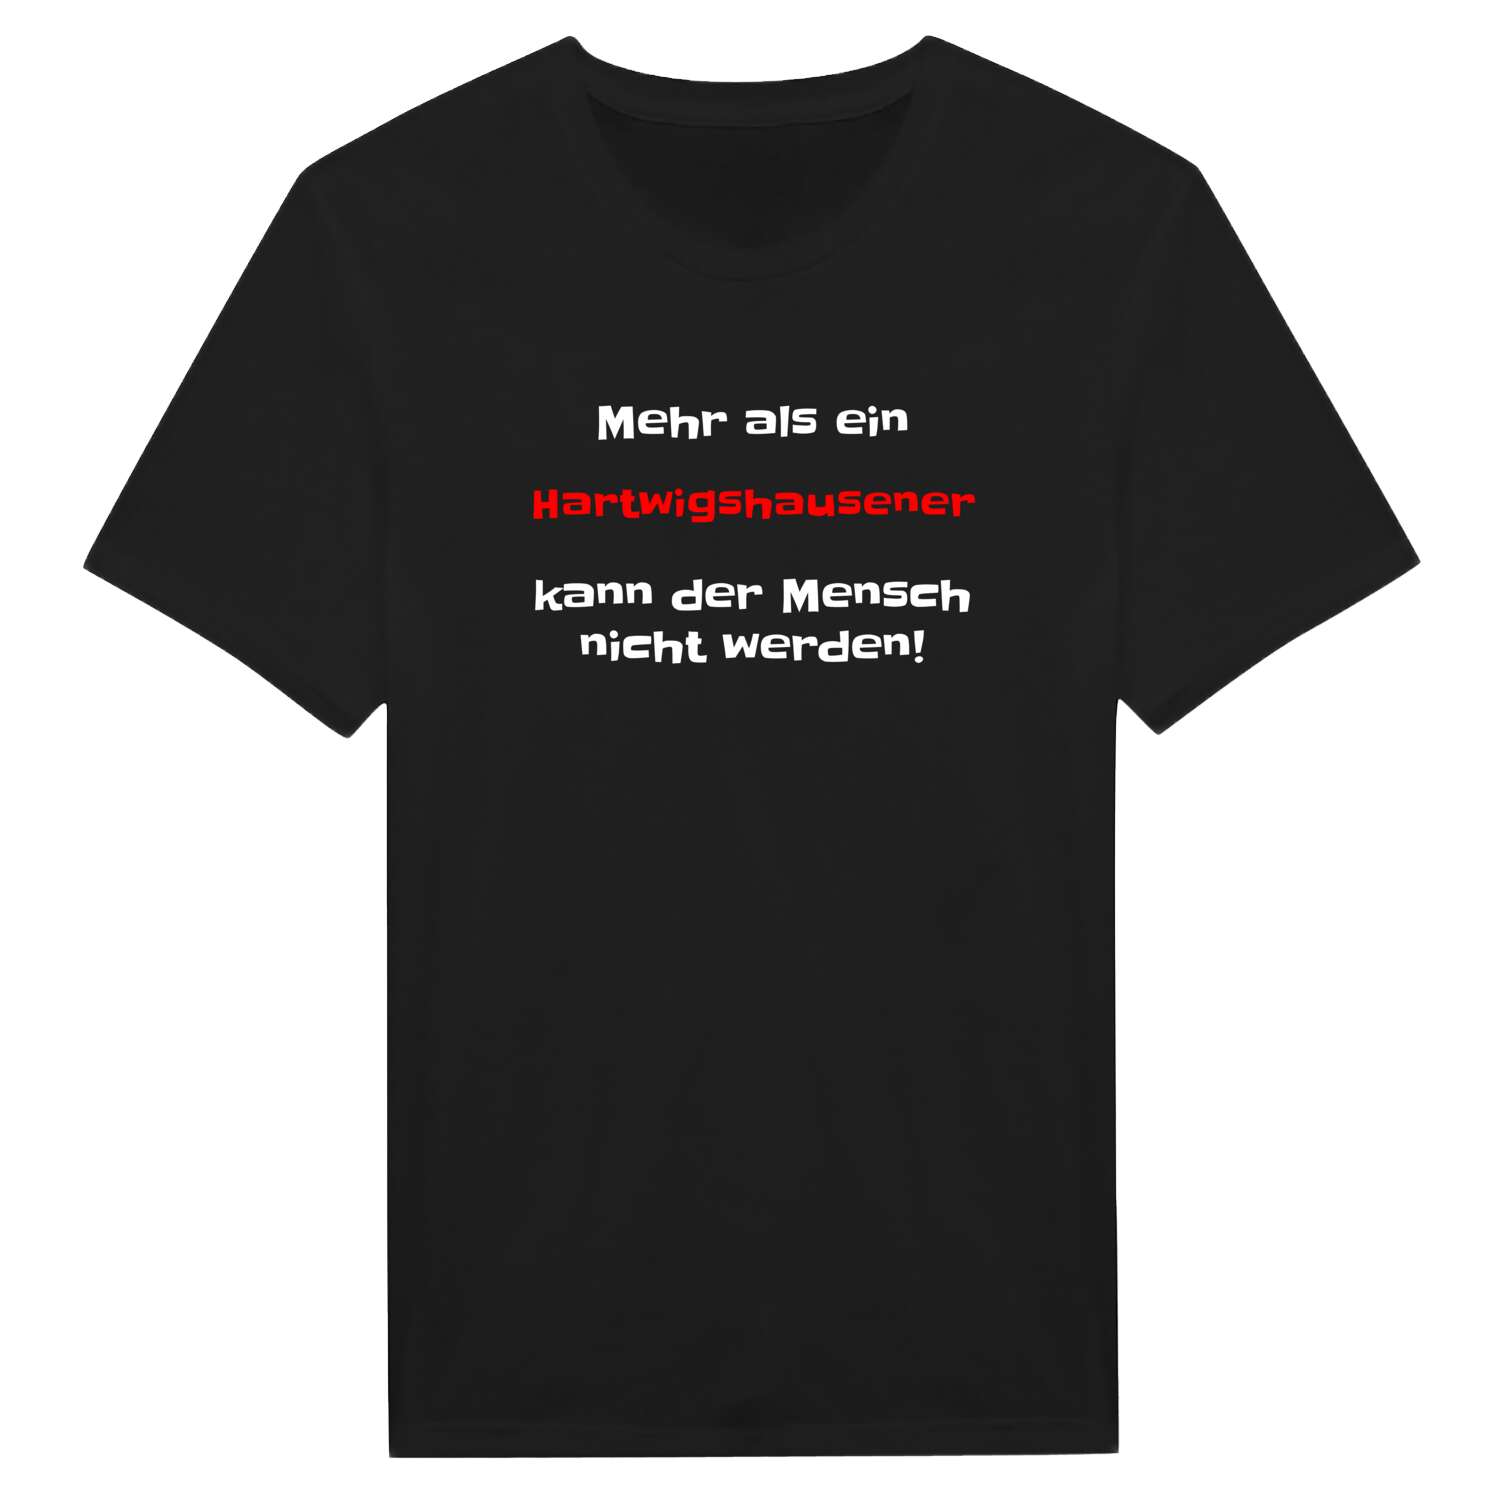 Hartwigshausen T-Shirt »Mehr als ein«